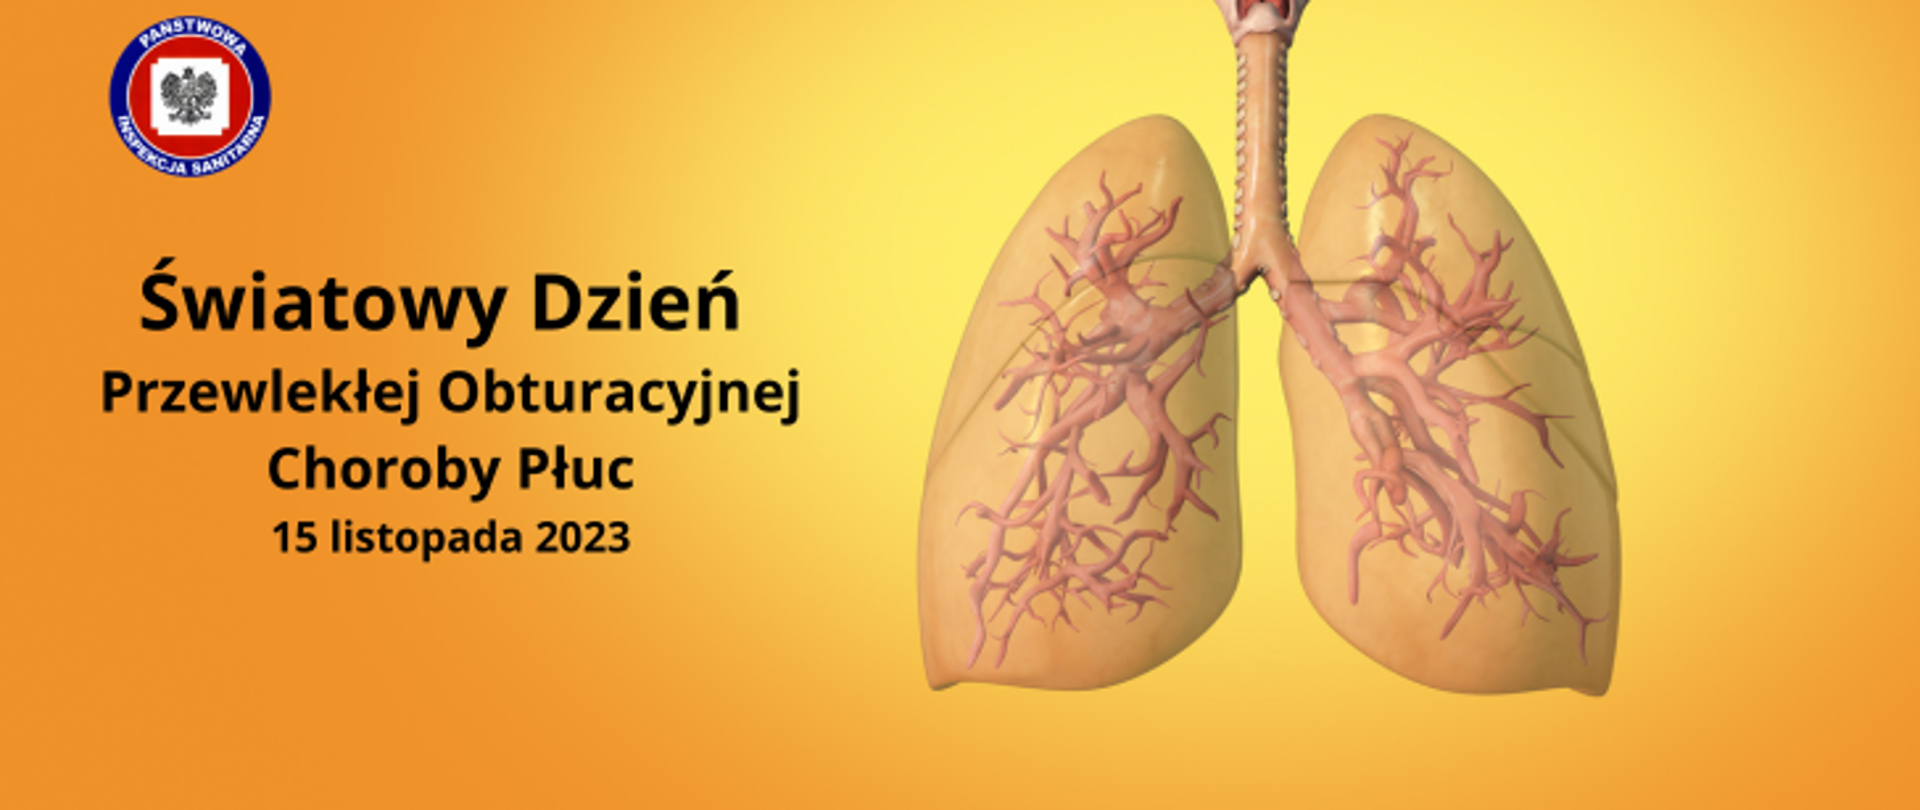 Światowy Dzień Przewlekłej Obstrukcyjnej Choroby Płuc